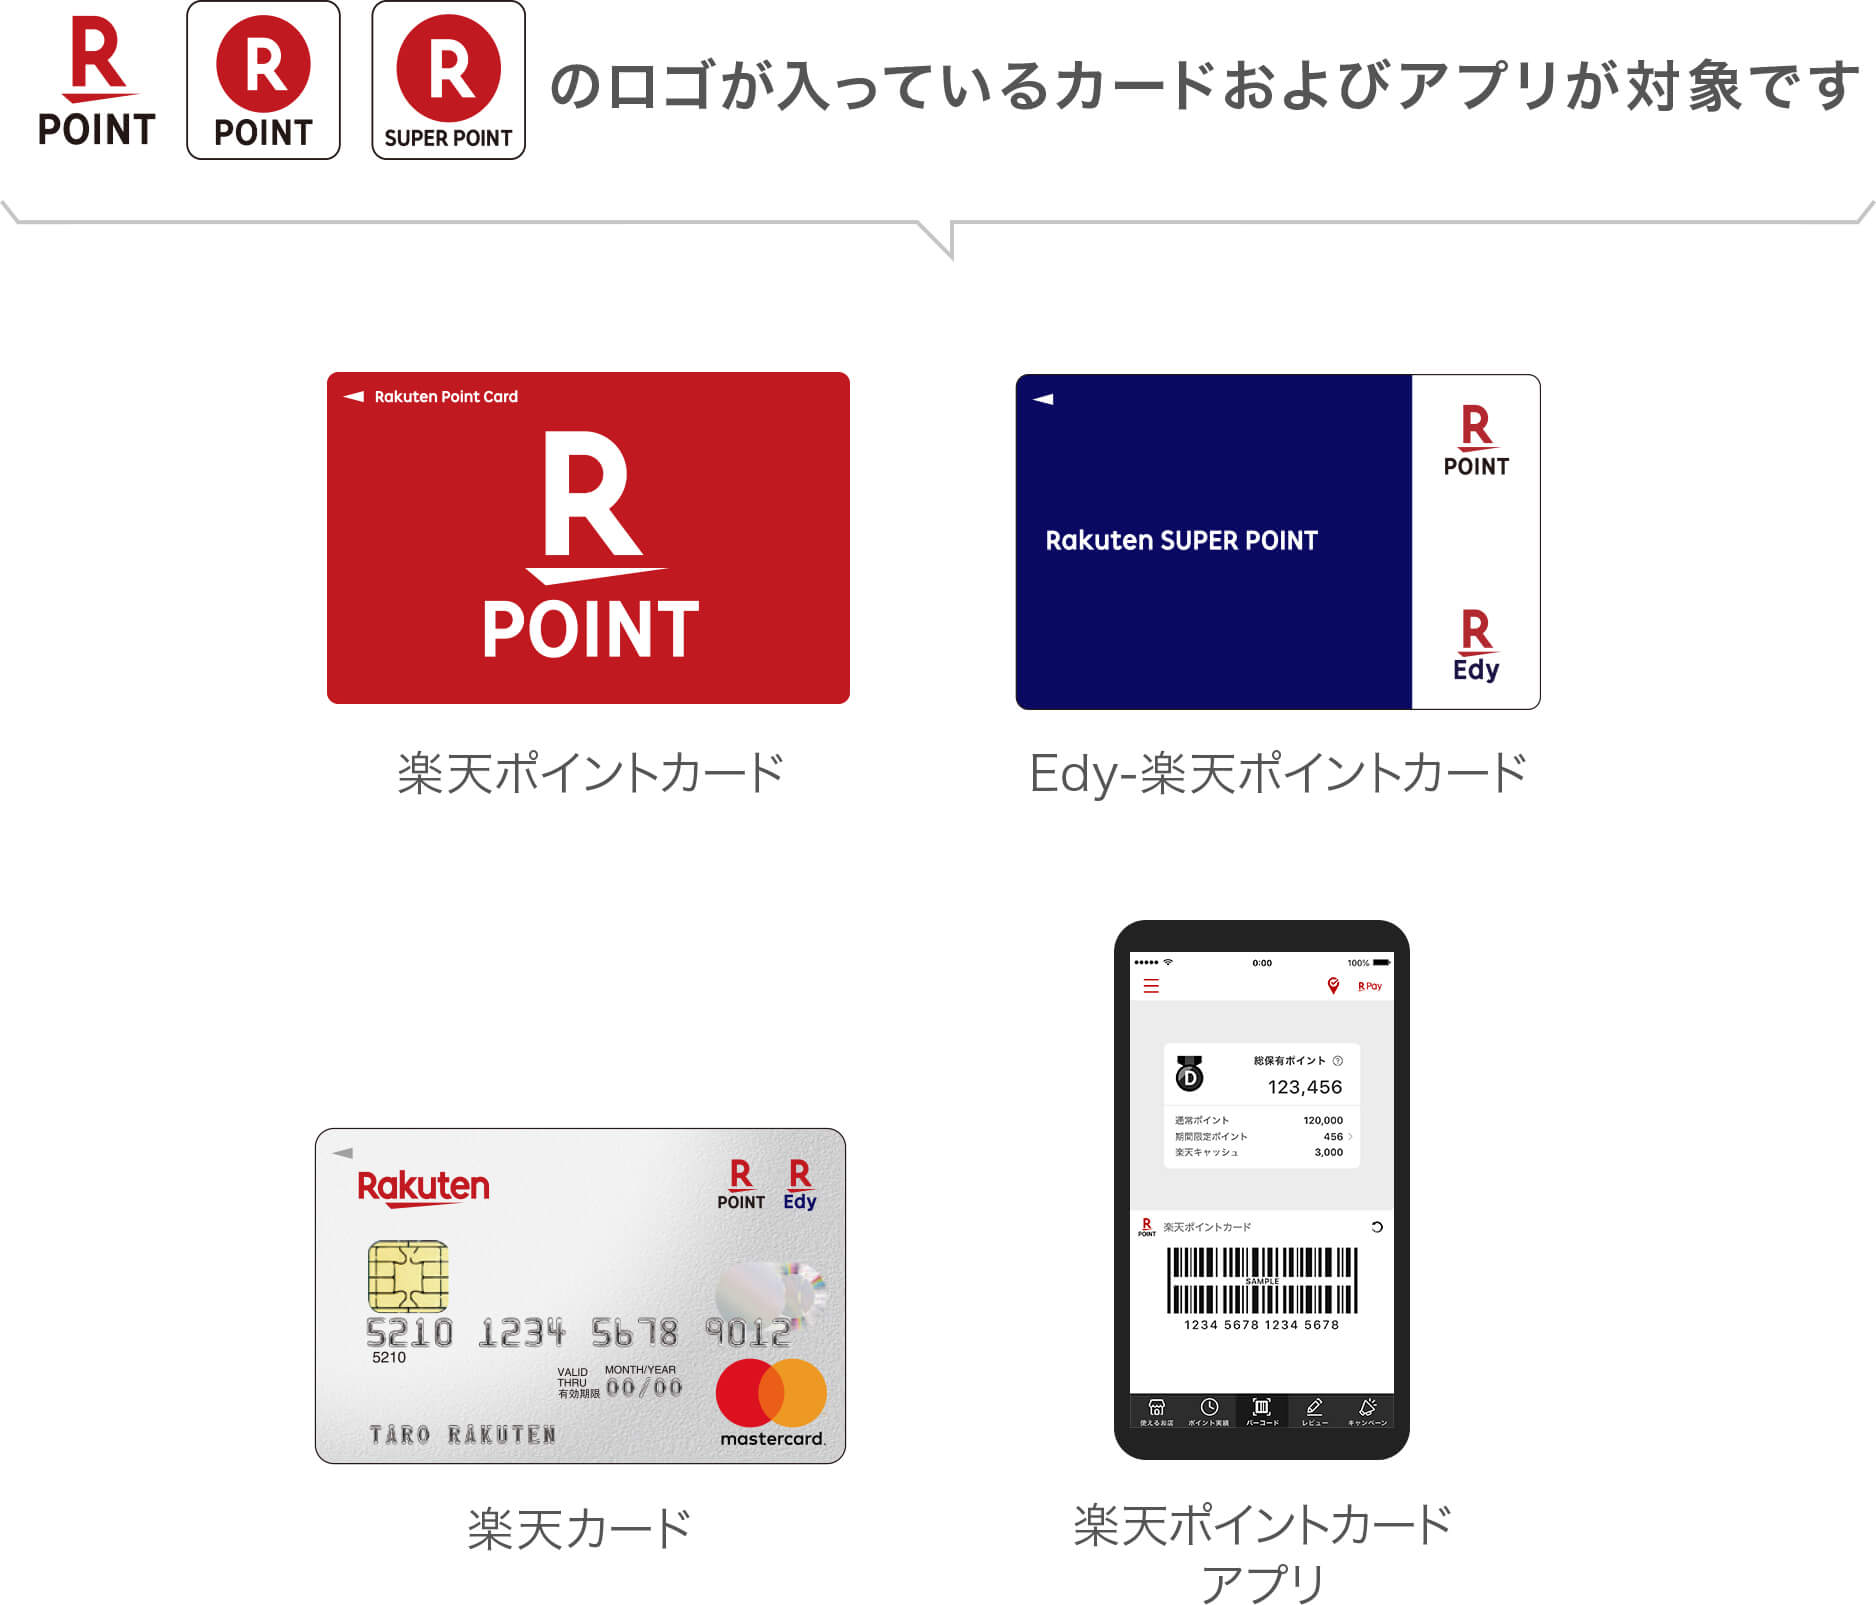 楽天ポイントのロゴが入っているカードおよびアプリが対象です。楽天ポイントカード、Edy-楽天ポイントカード、楽天カード、楽天ポイントカードアプリ